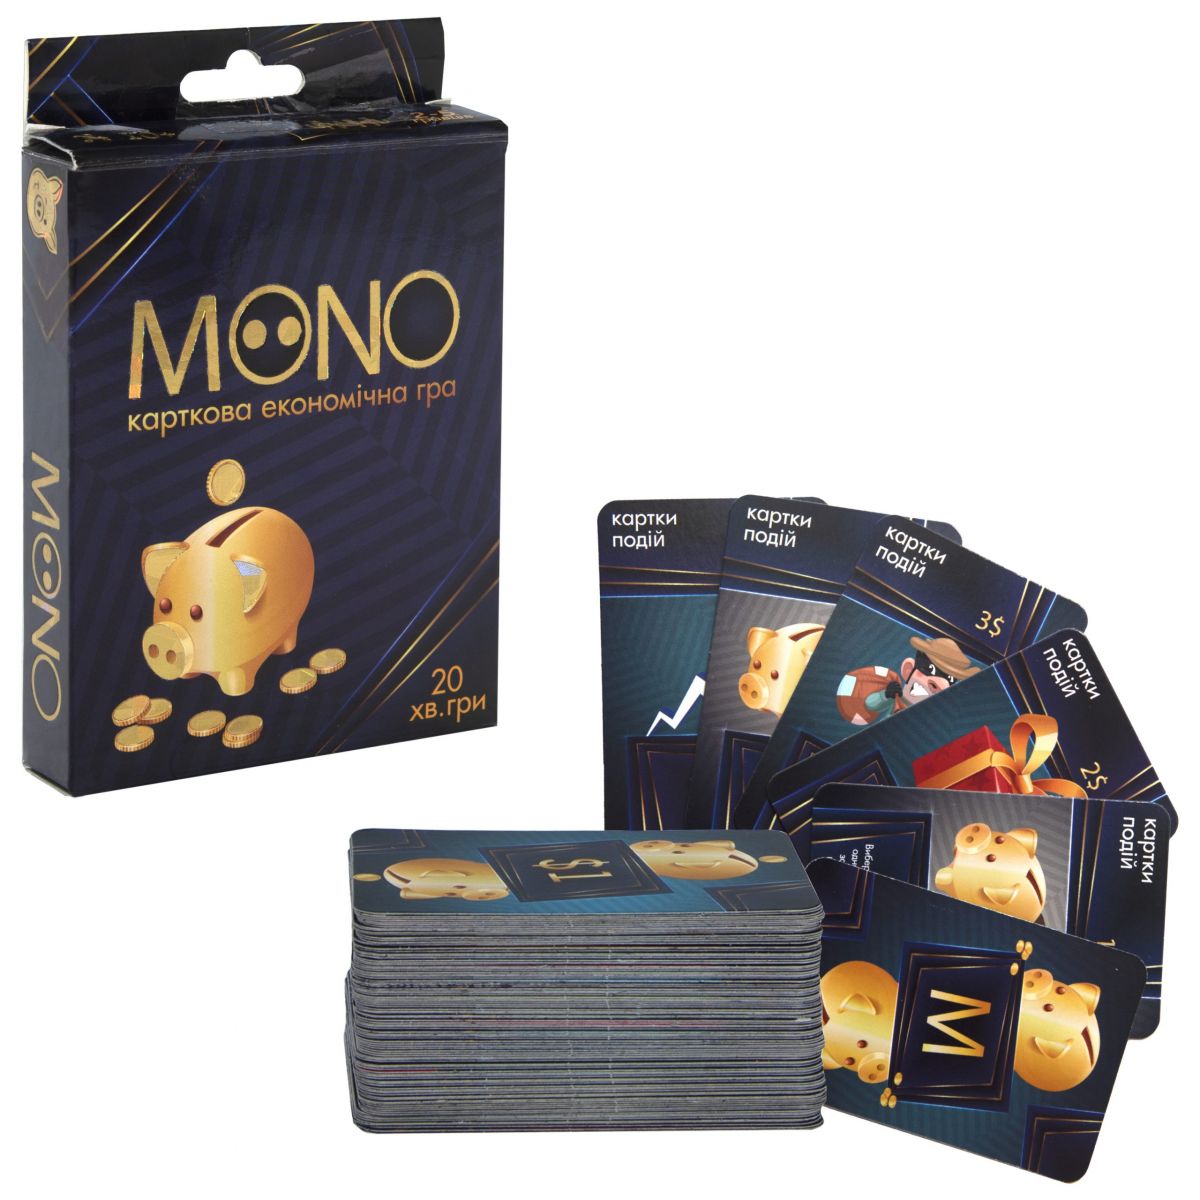 Карткова економічна гра "Mono" (укр)